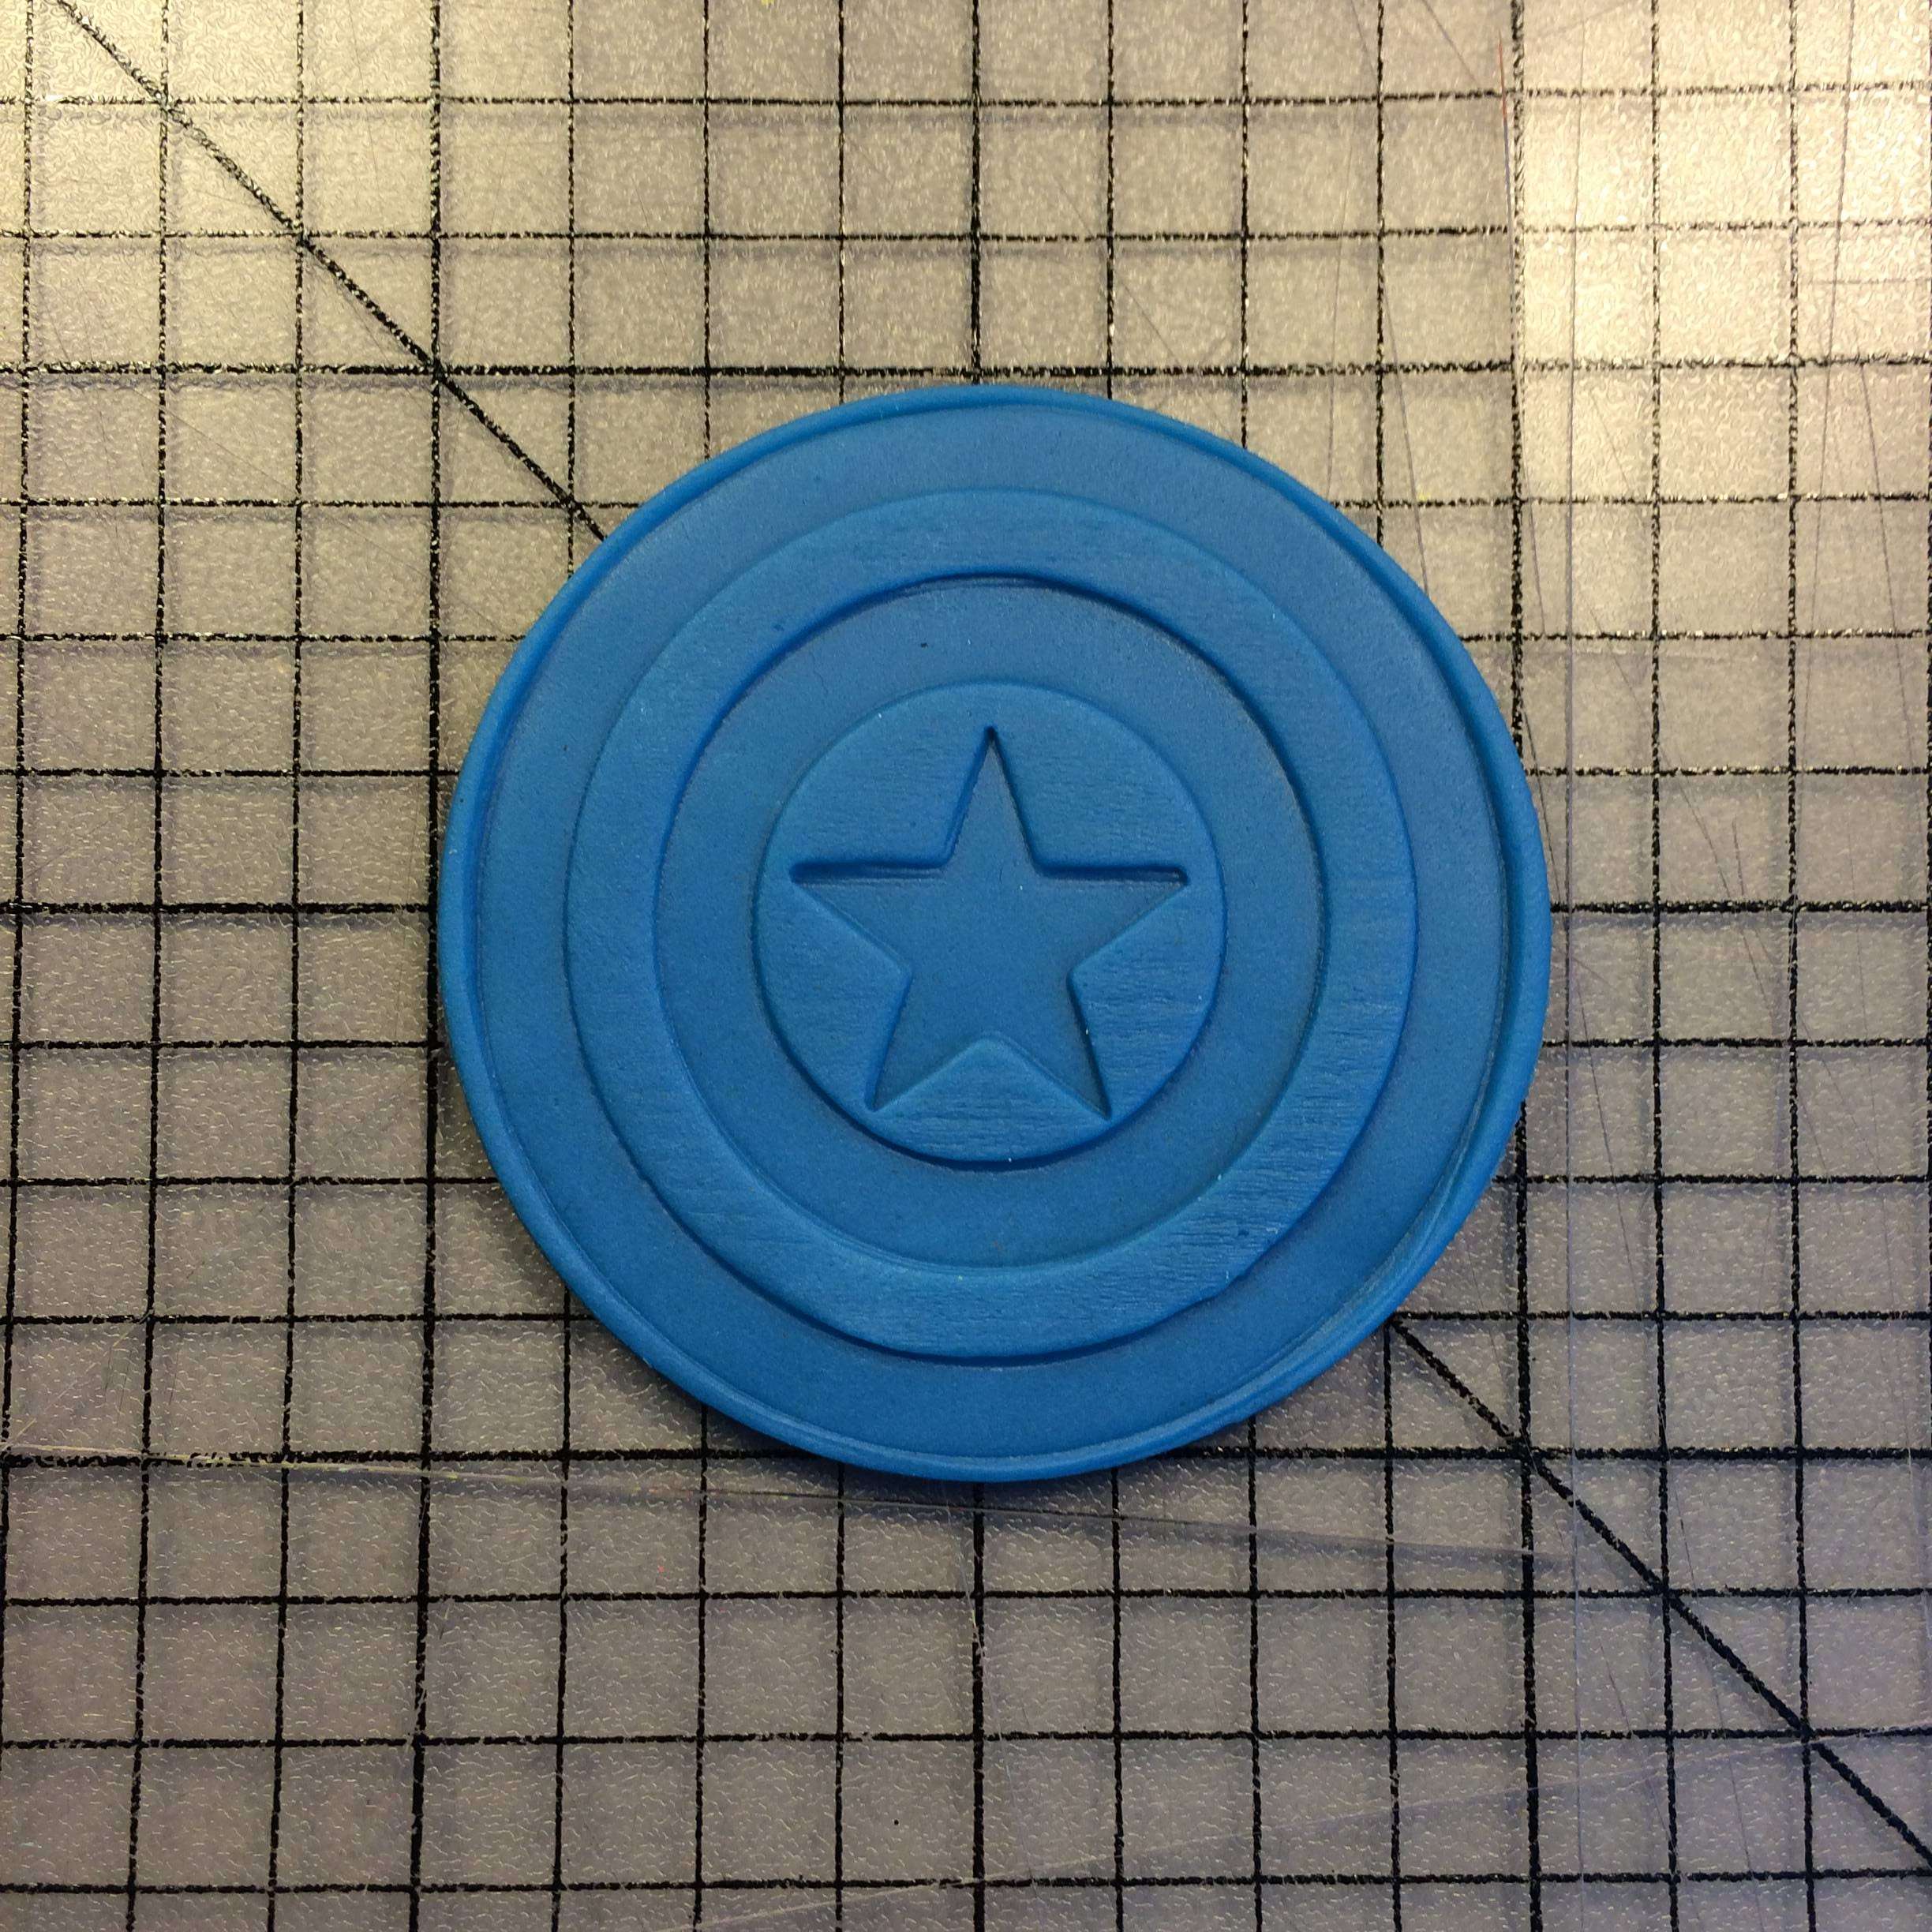 S178 Captain America Shield Rubber Stamp 20mm Mini Stamps Shield Stamp 16mm Planner Stamp